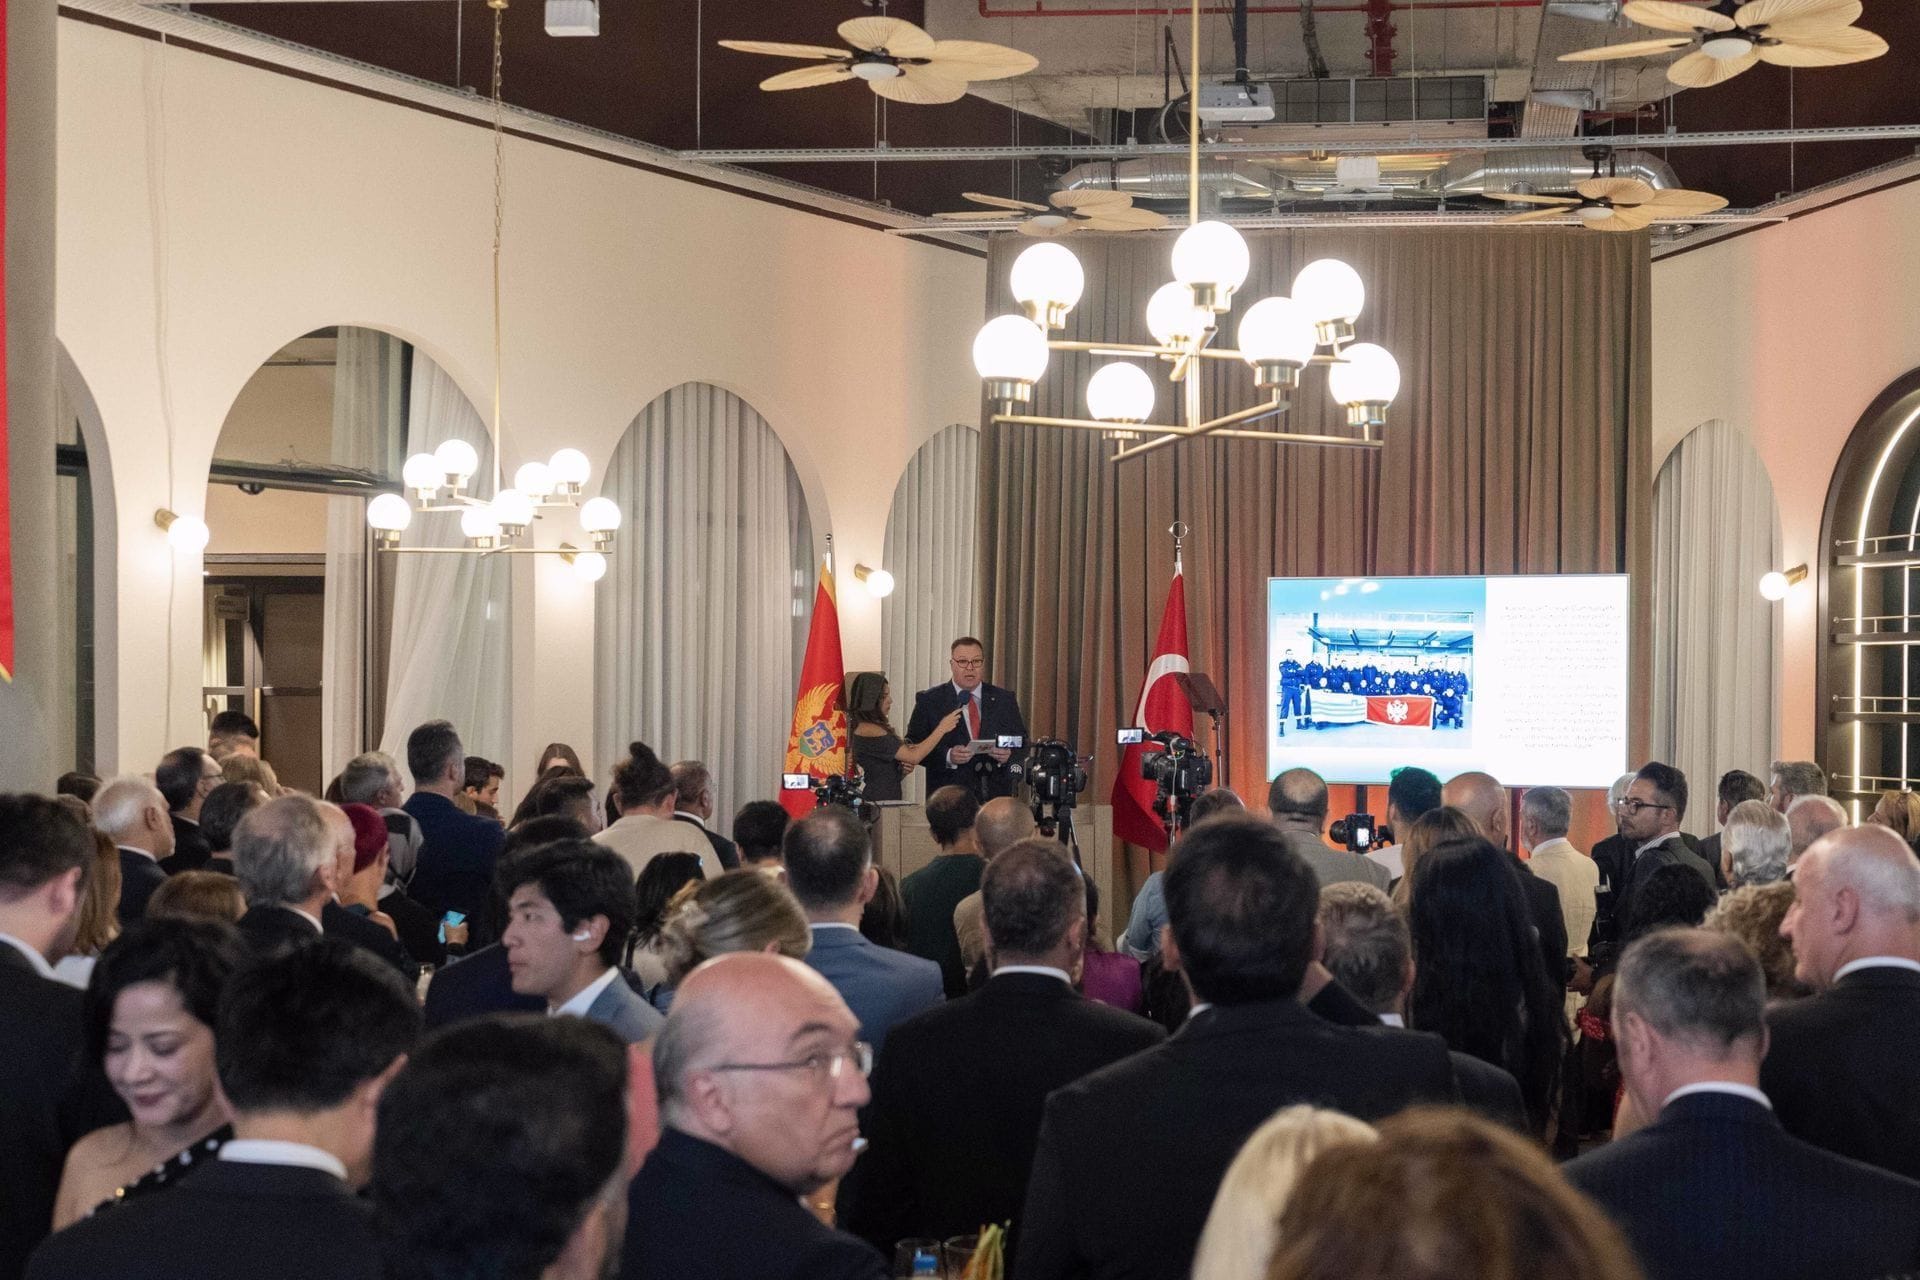 Ankara: Svečanost povodom Dana državnosti, Crna Gora primjer mirnog suživota i sigurnog okruženja